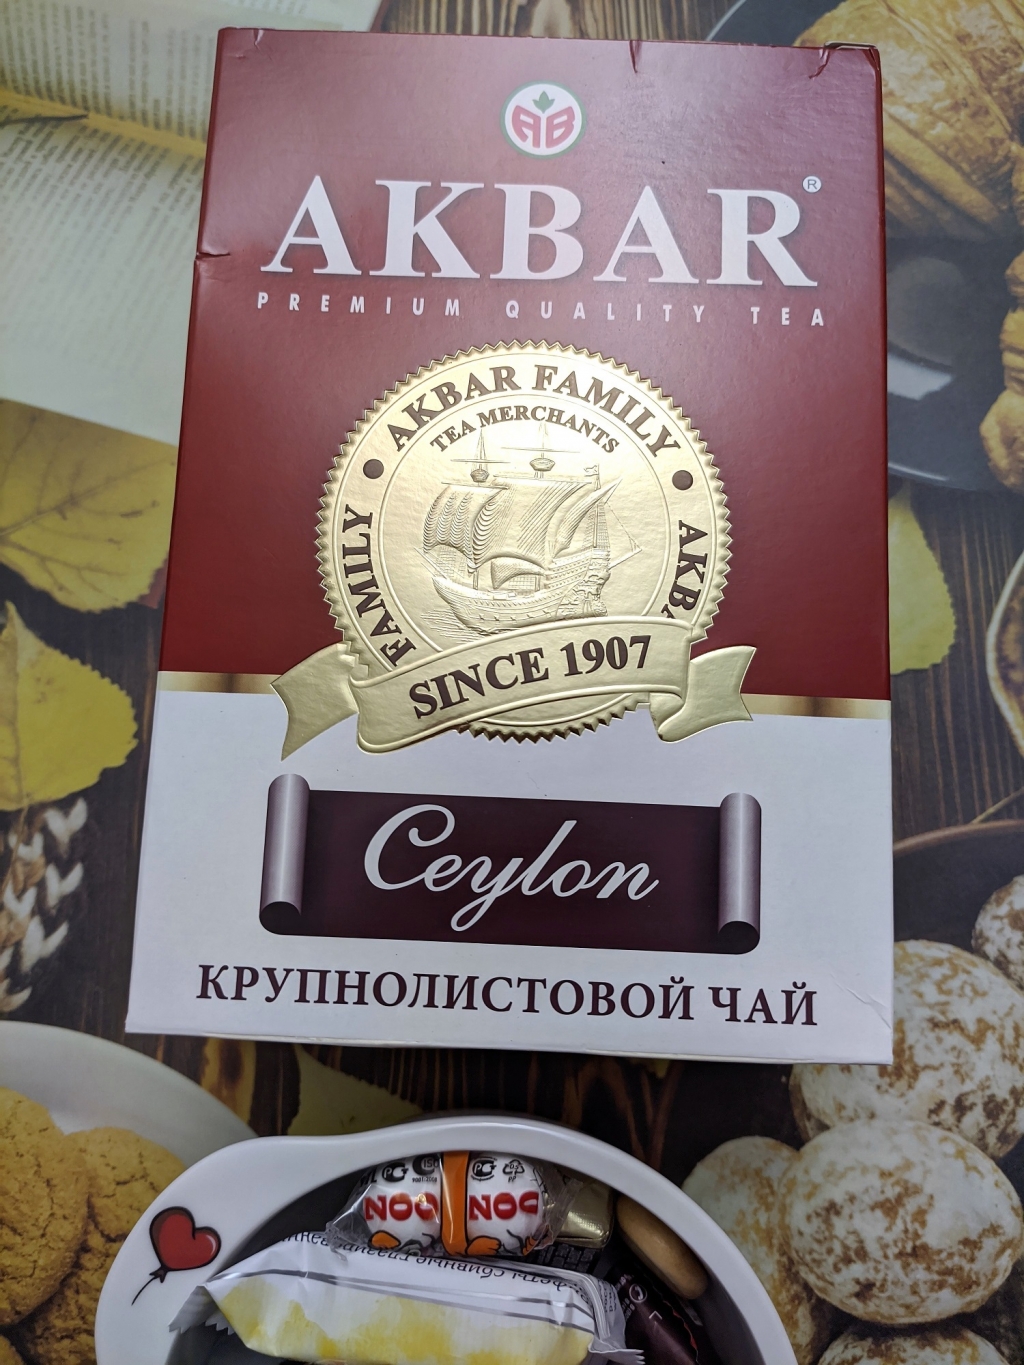 Черный чай Akbar Сeylon Медаль крупнолист, 250 г - Акбар - это качество!